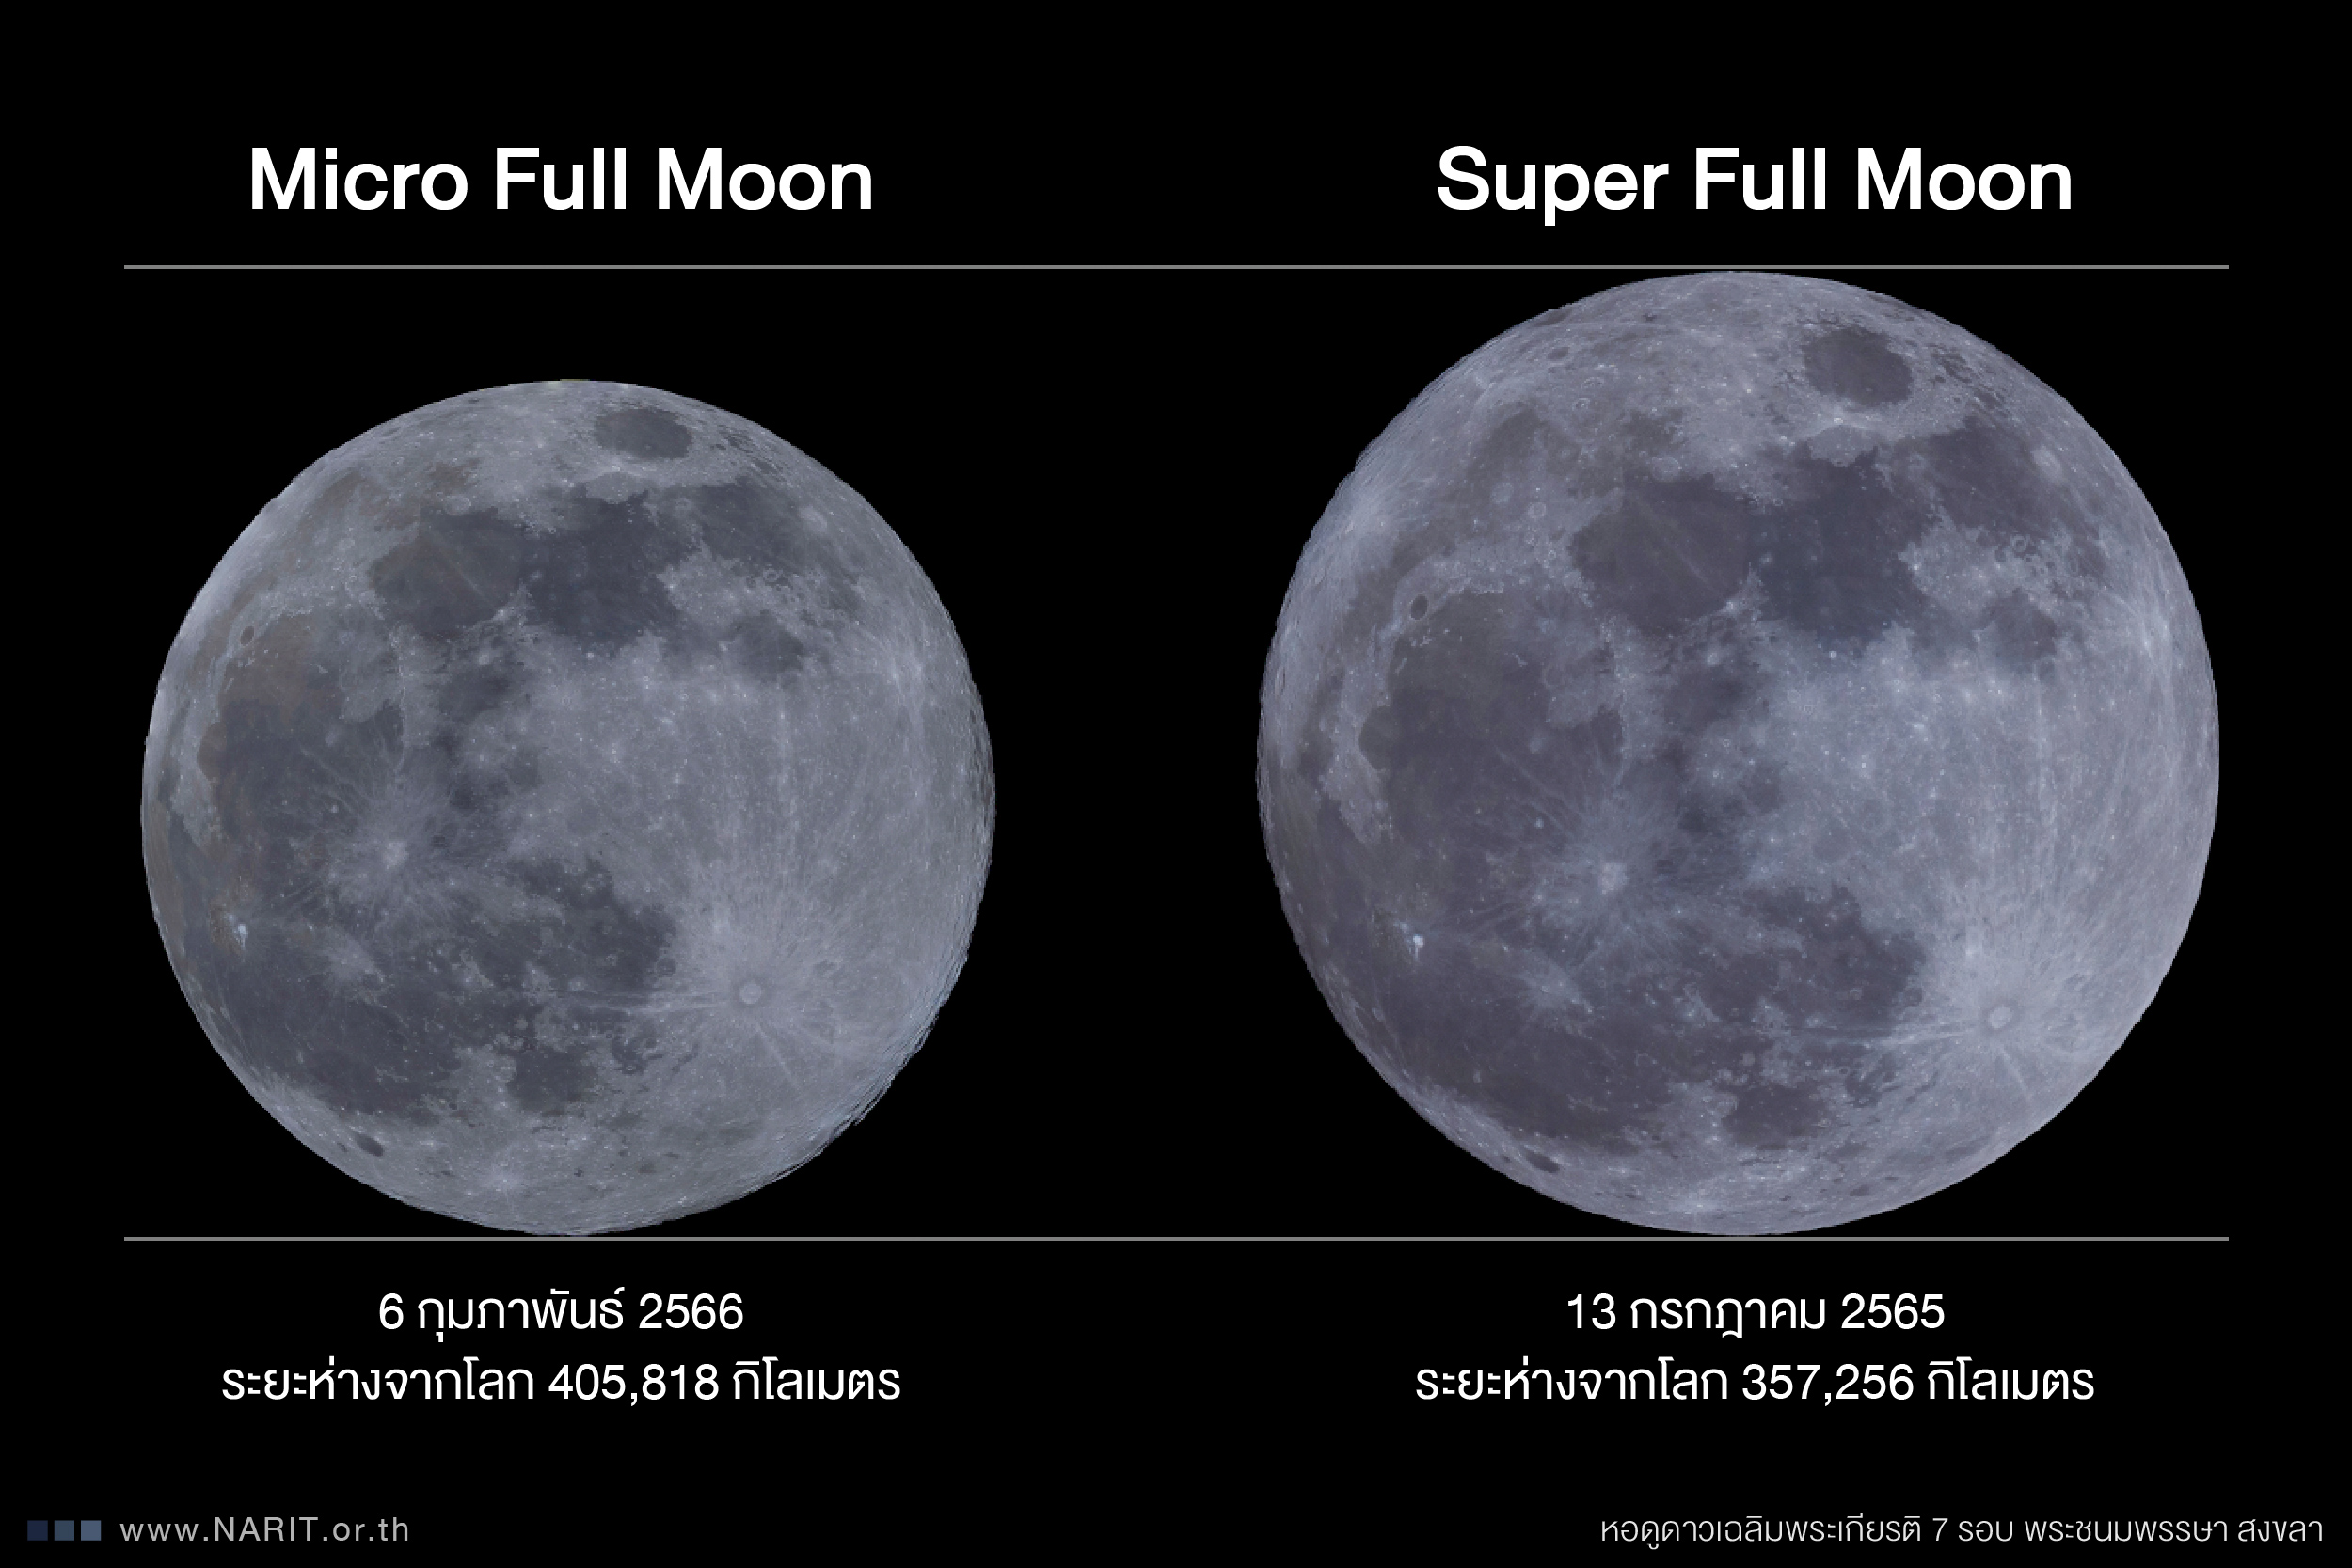 ภาพเปรียบเทียบขนาดปรากฏ “ดวงจันทร์เต็มดวงไกลโลกที่สุดในรอบปี”